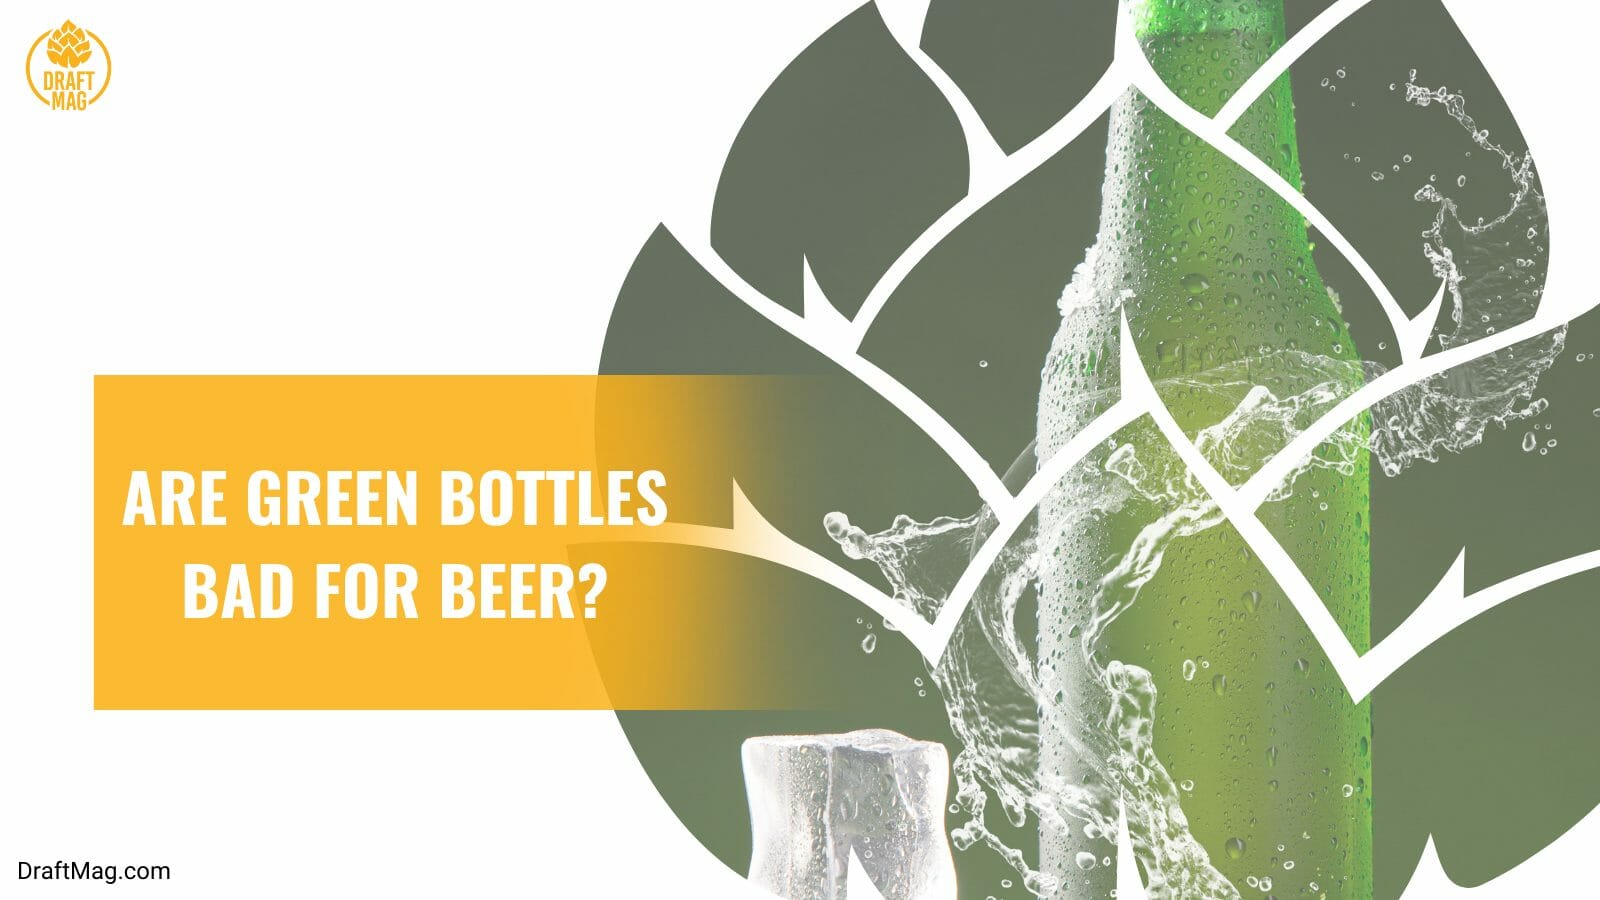 Green bottles bad for beer